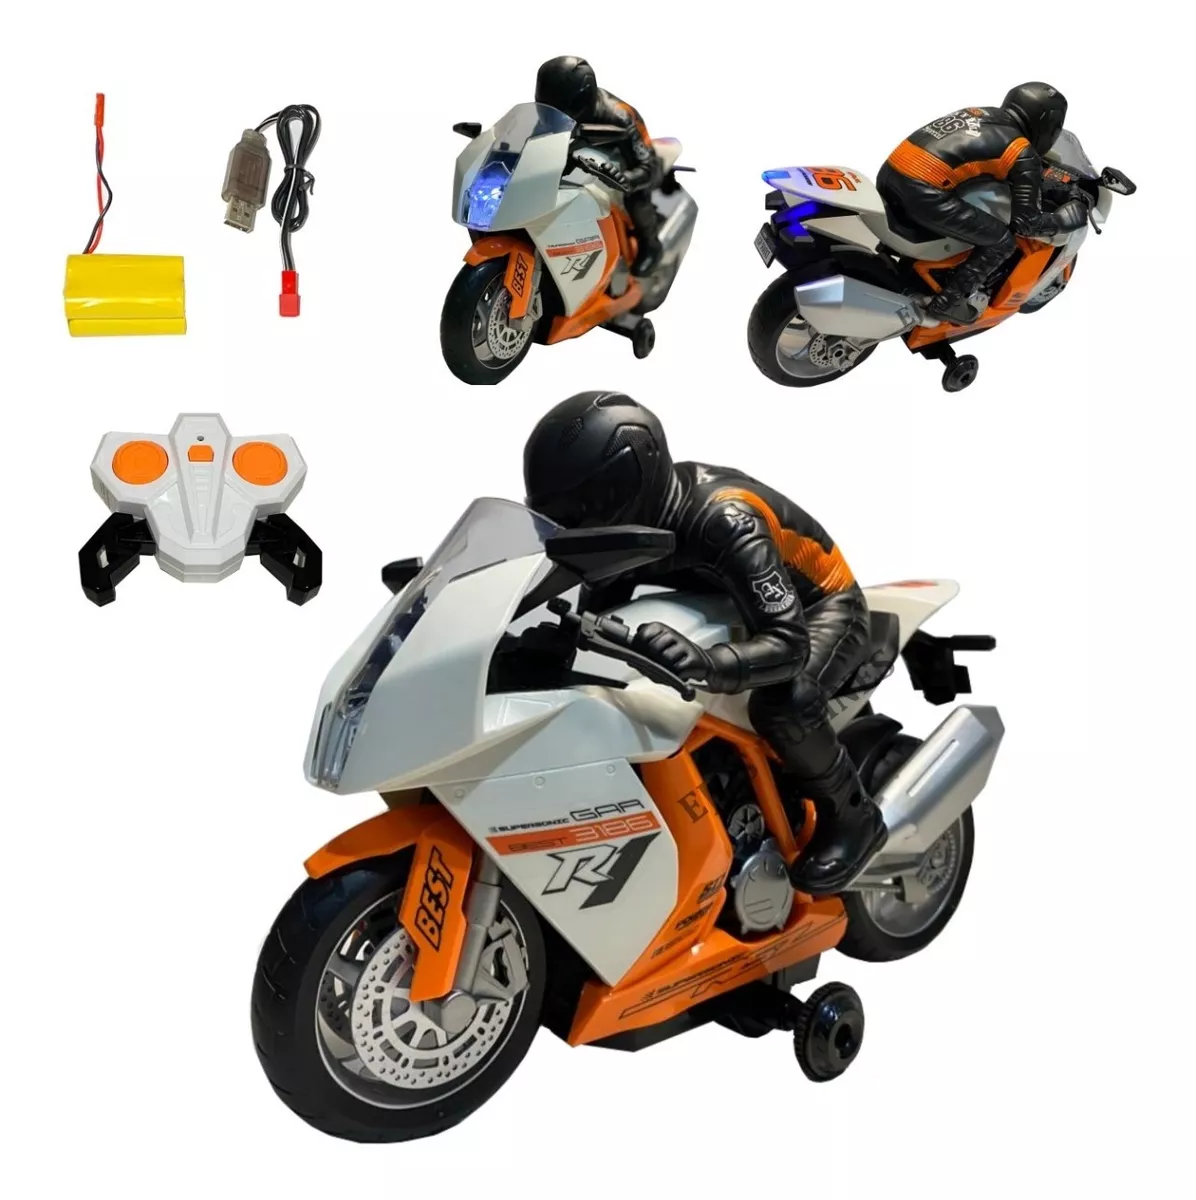 Primeira imagem para pesquisa de moto de brinquedo